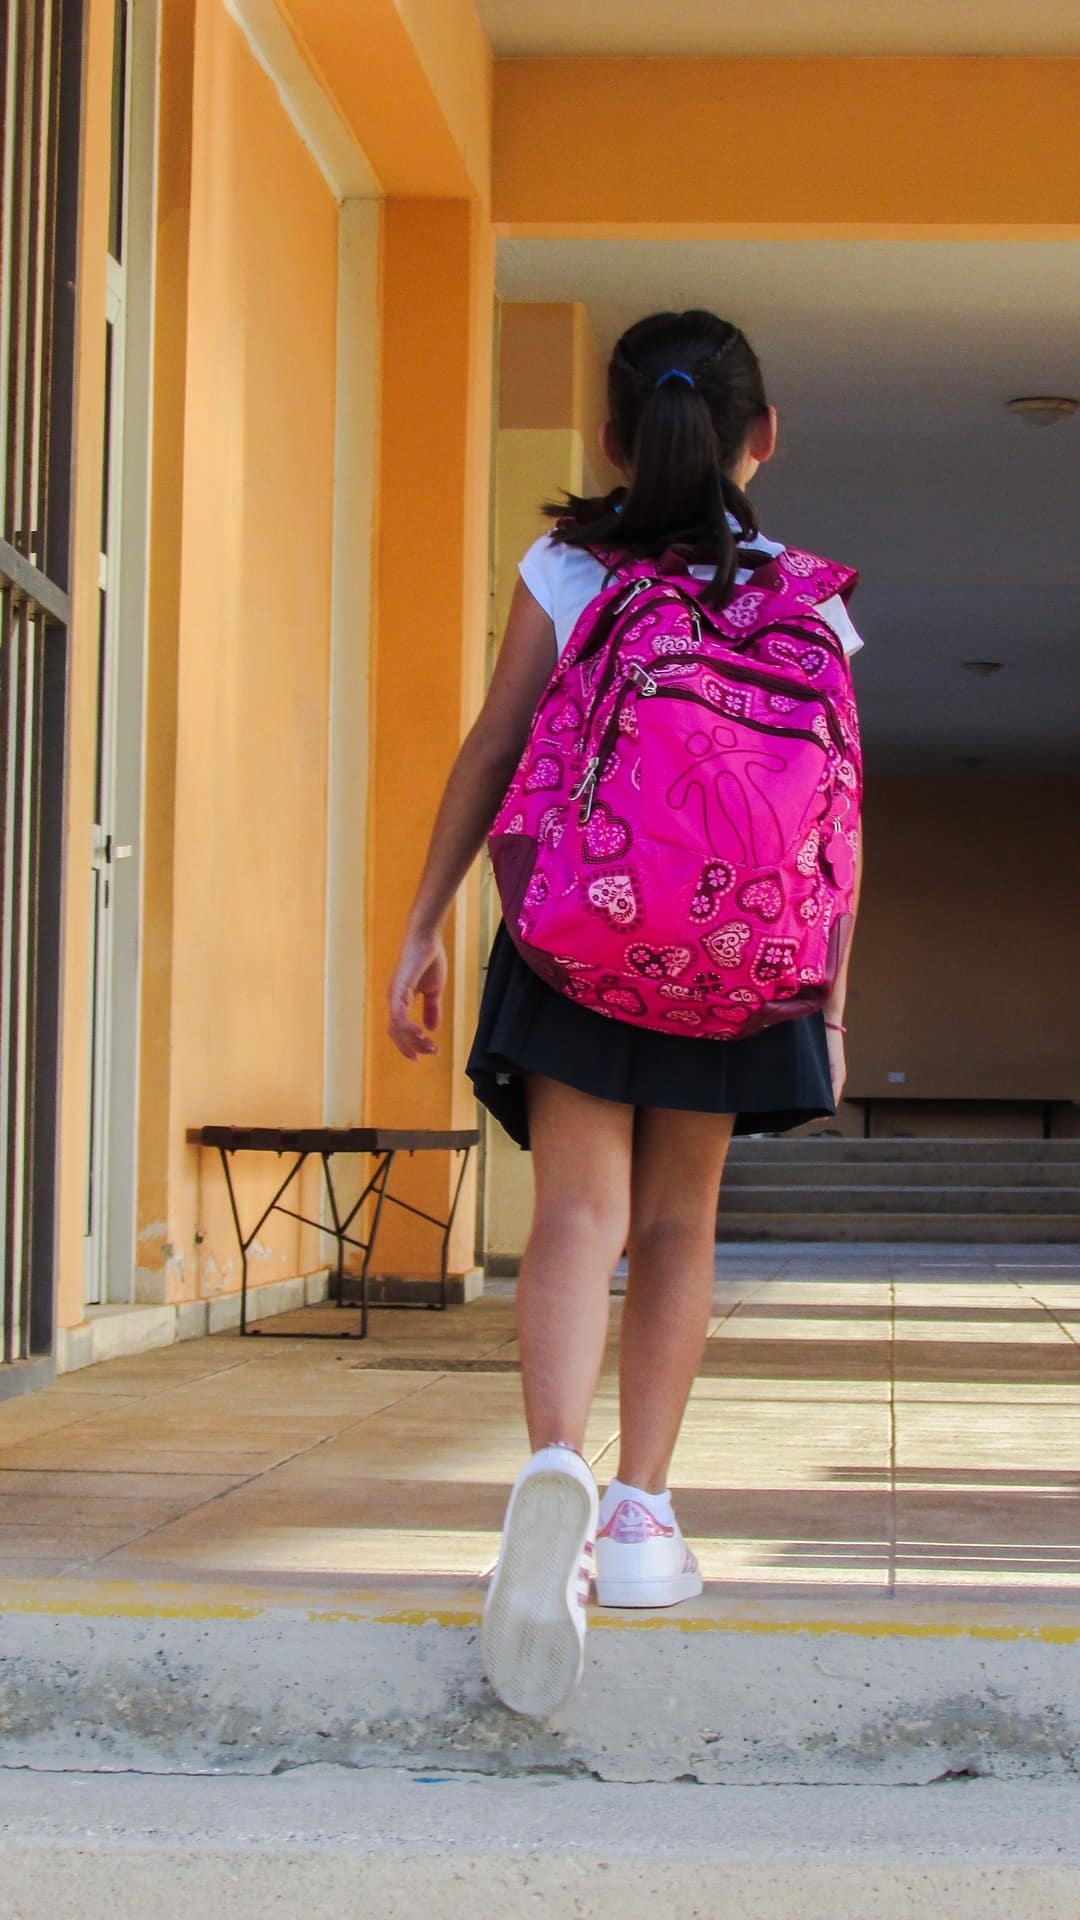 skoletasker forstyrrer barnets rygsøjle